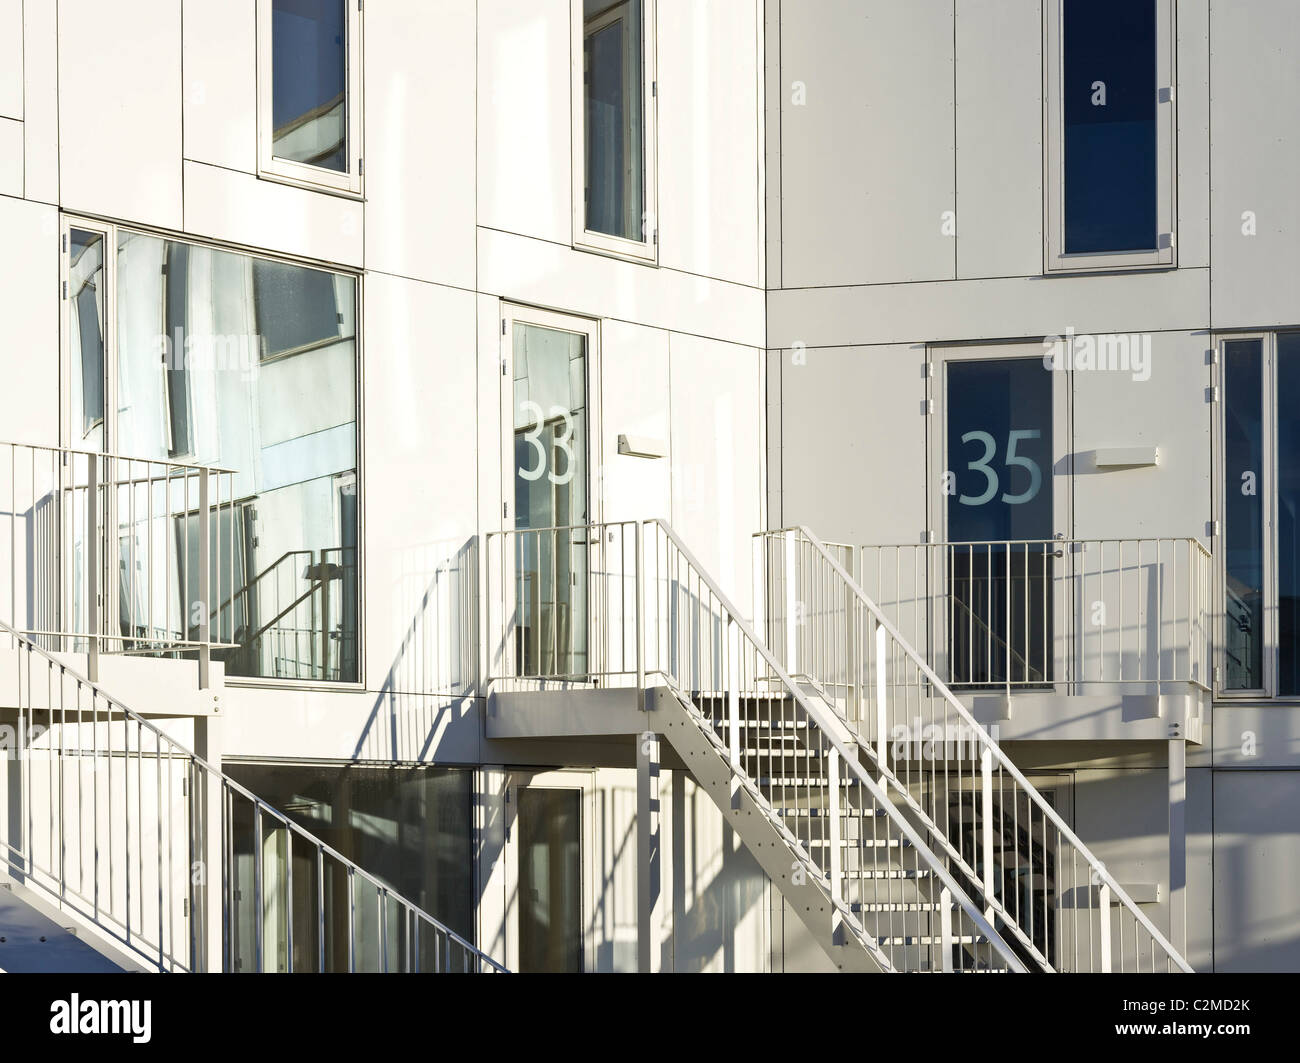 Trekroner Housing Development, Roskilde. Stock Photo